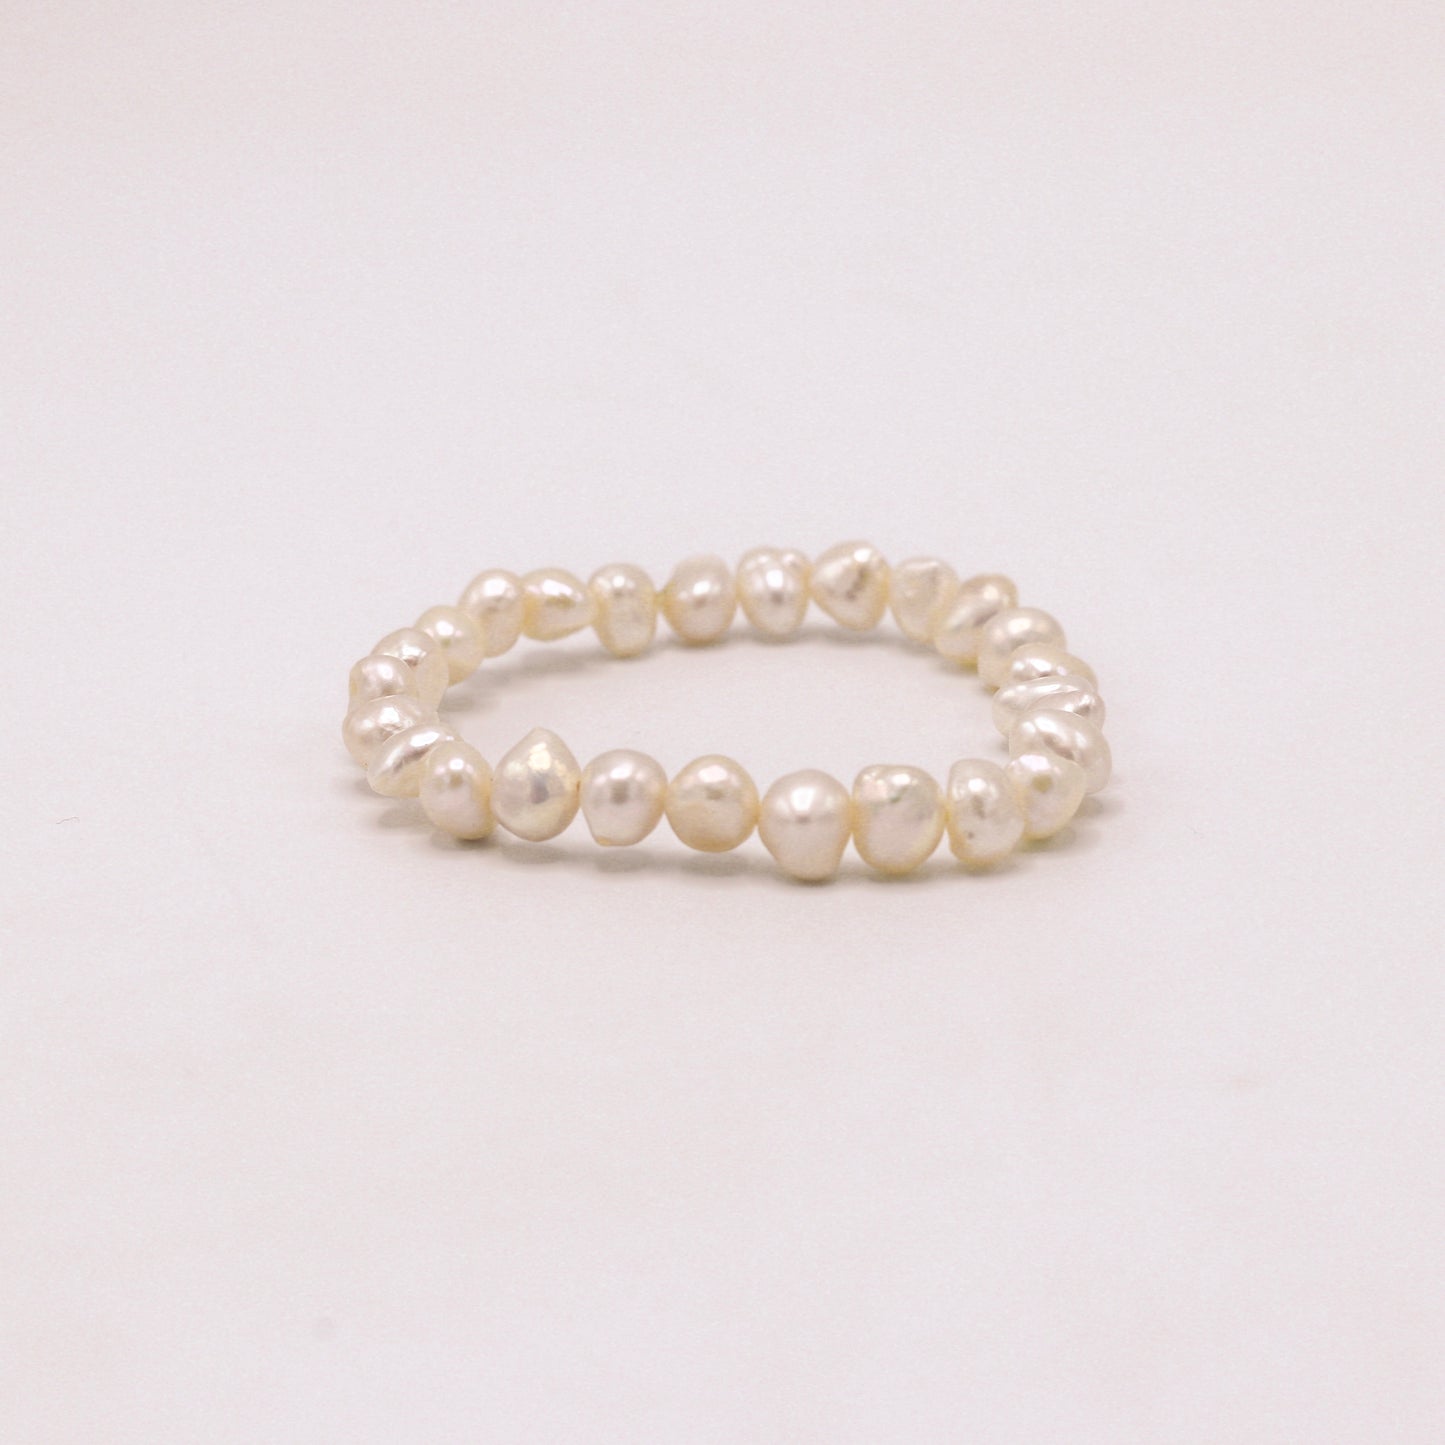 Gemstone Bracelet- Keshi Pearls